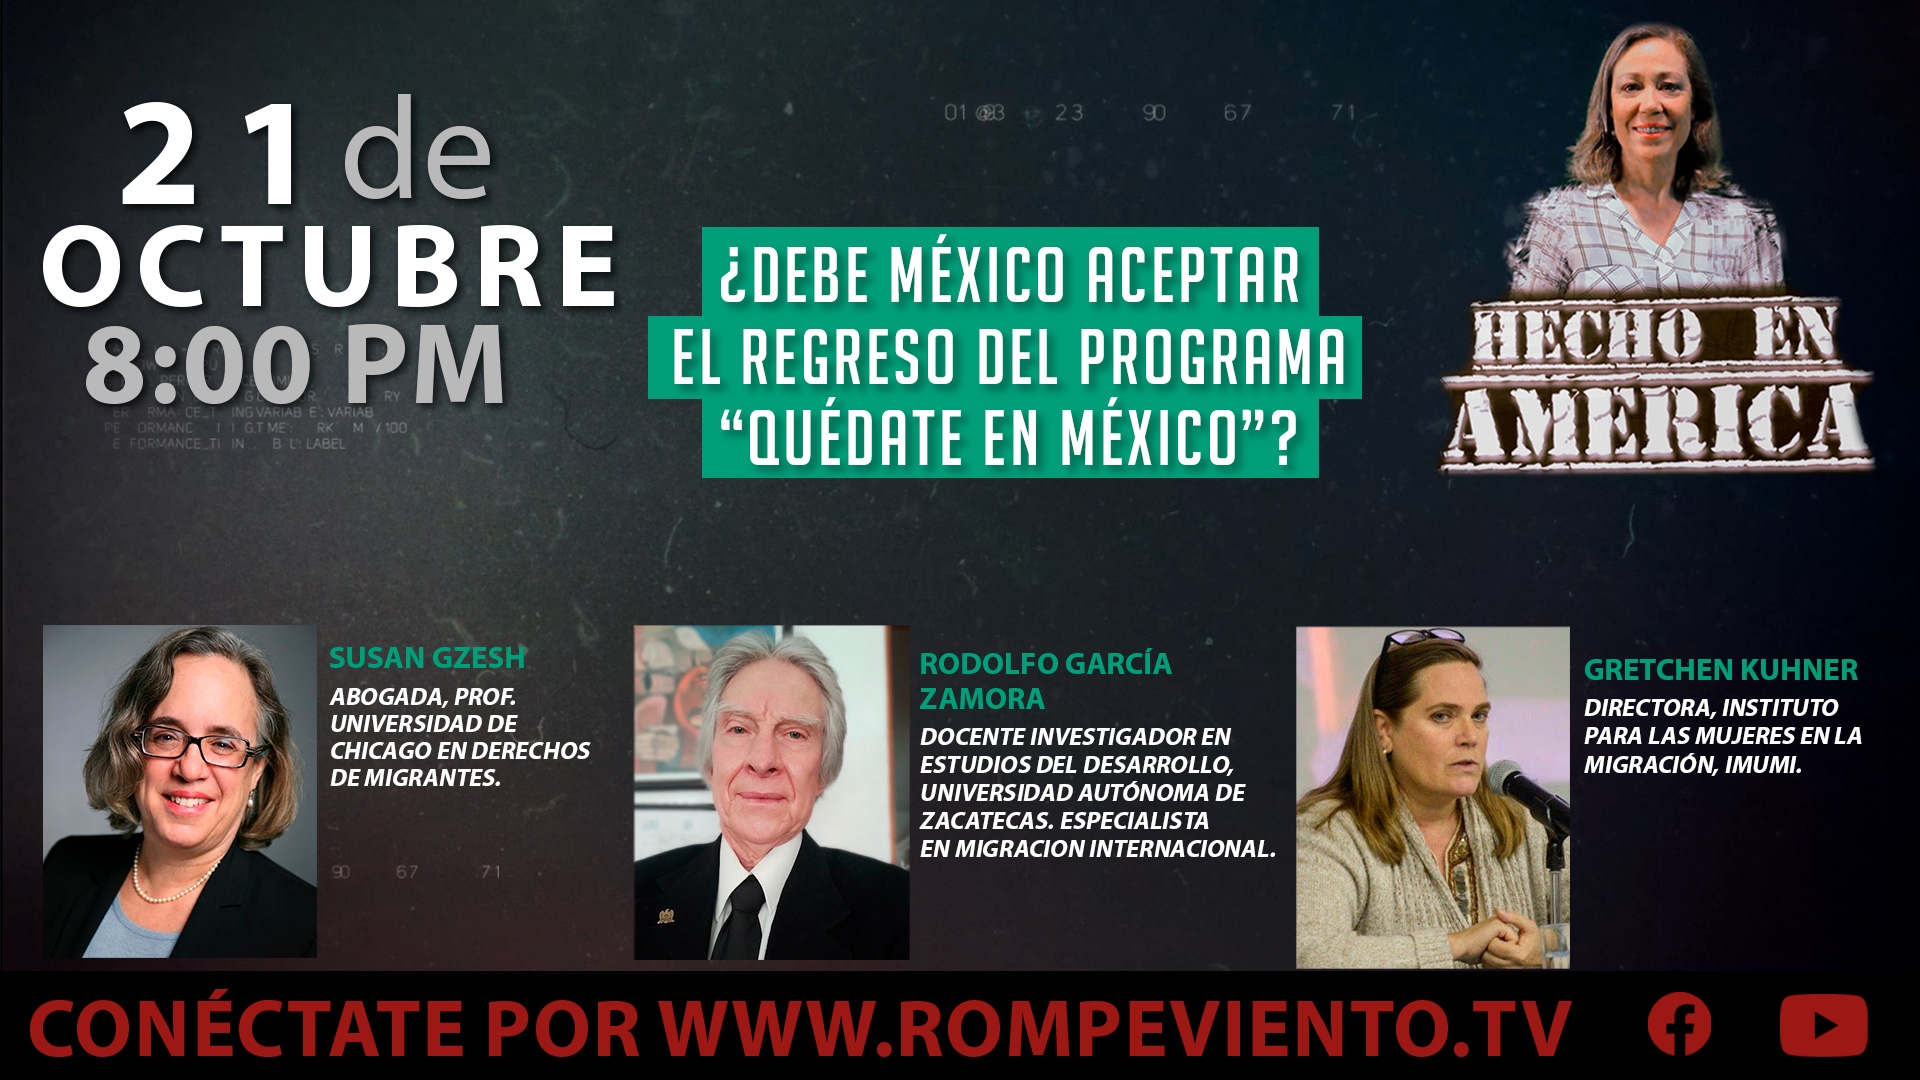 ¿Debe México aceptar el regreso del programa “Quédate en México”? - Hecho en América